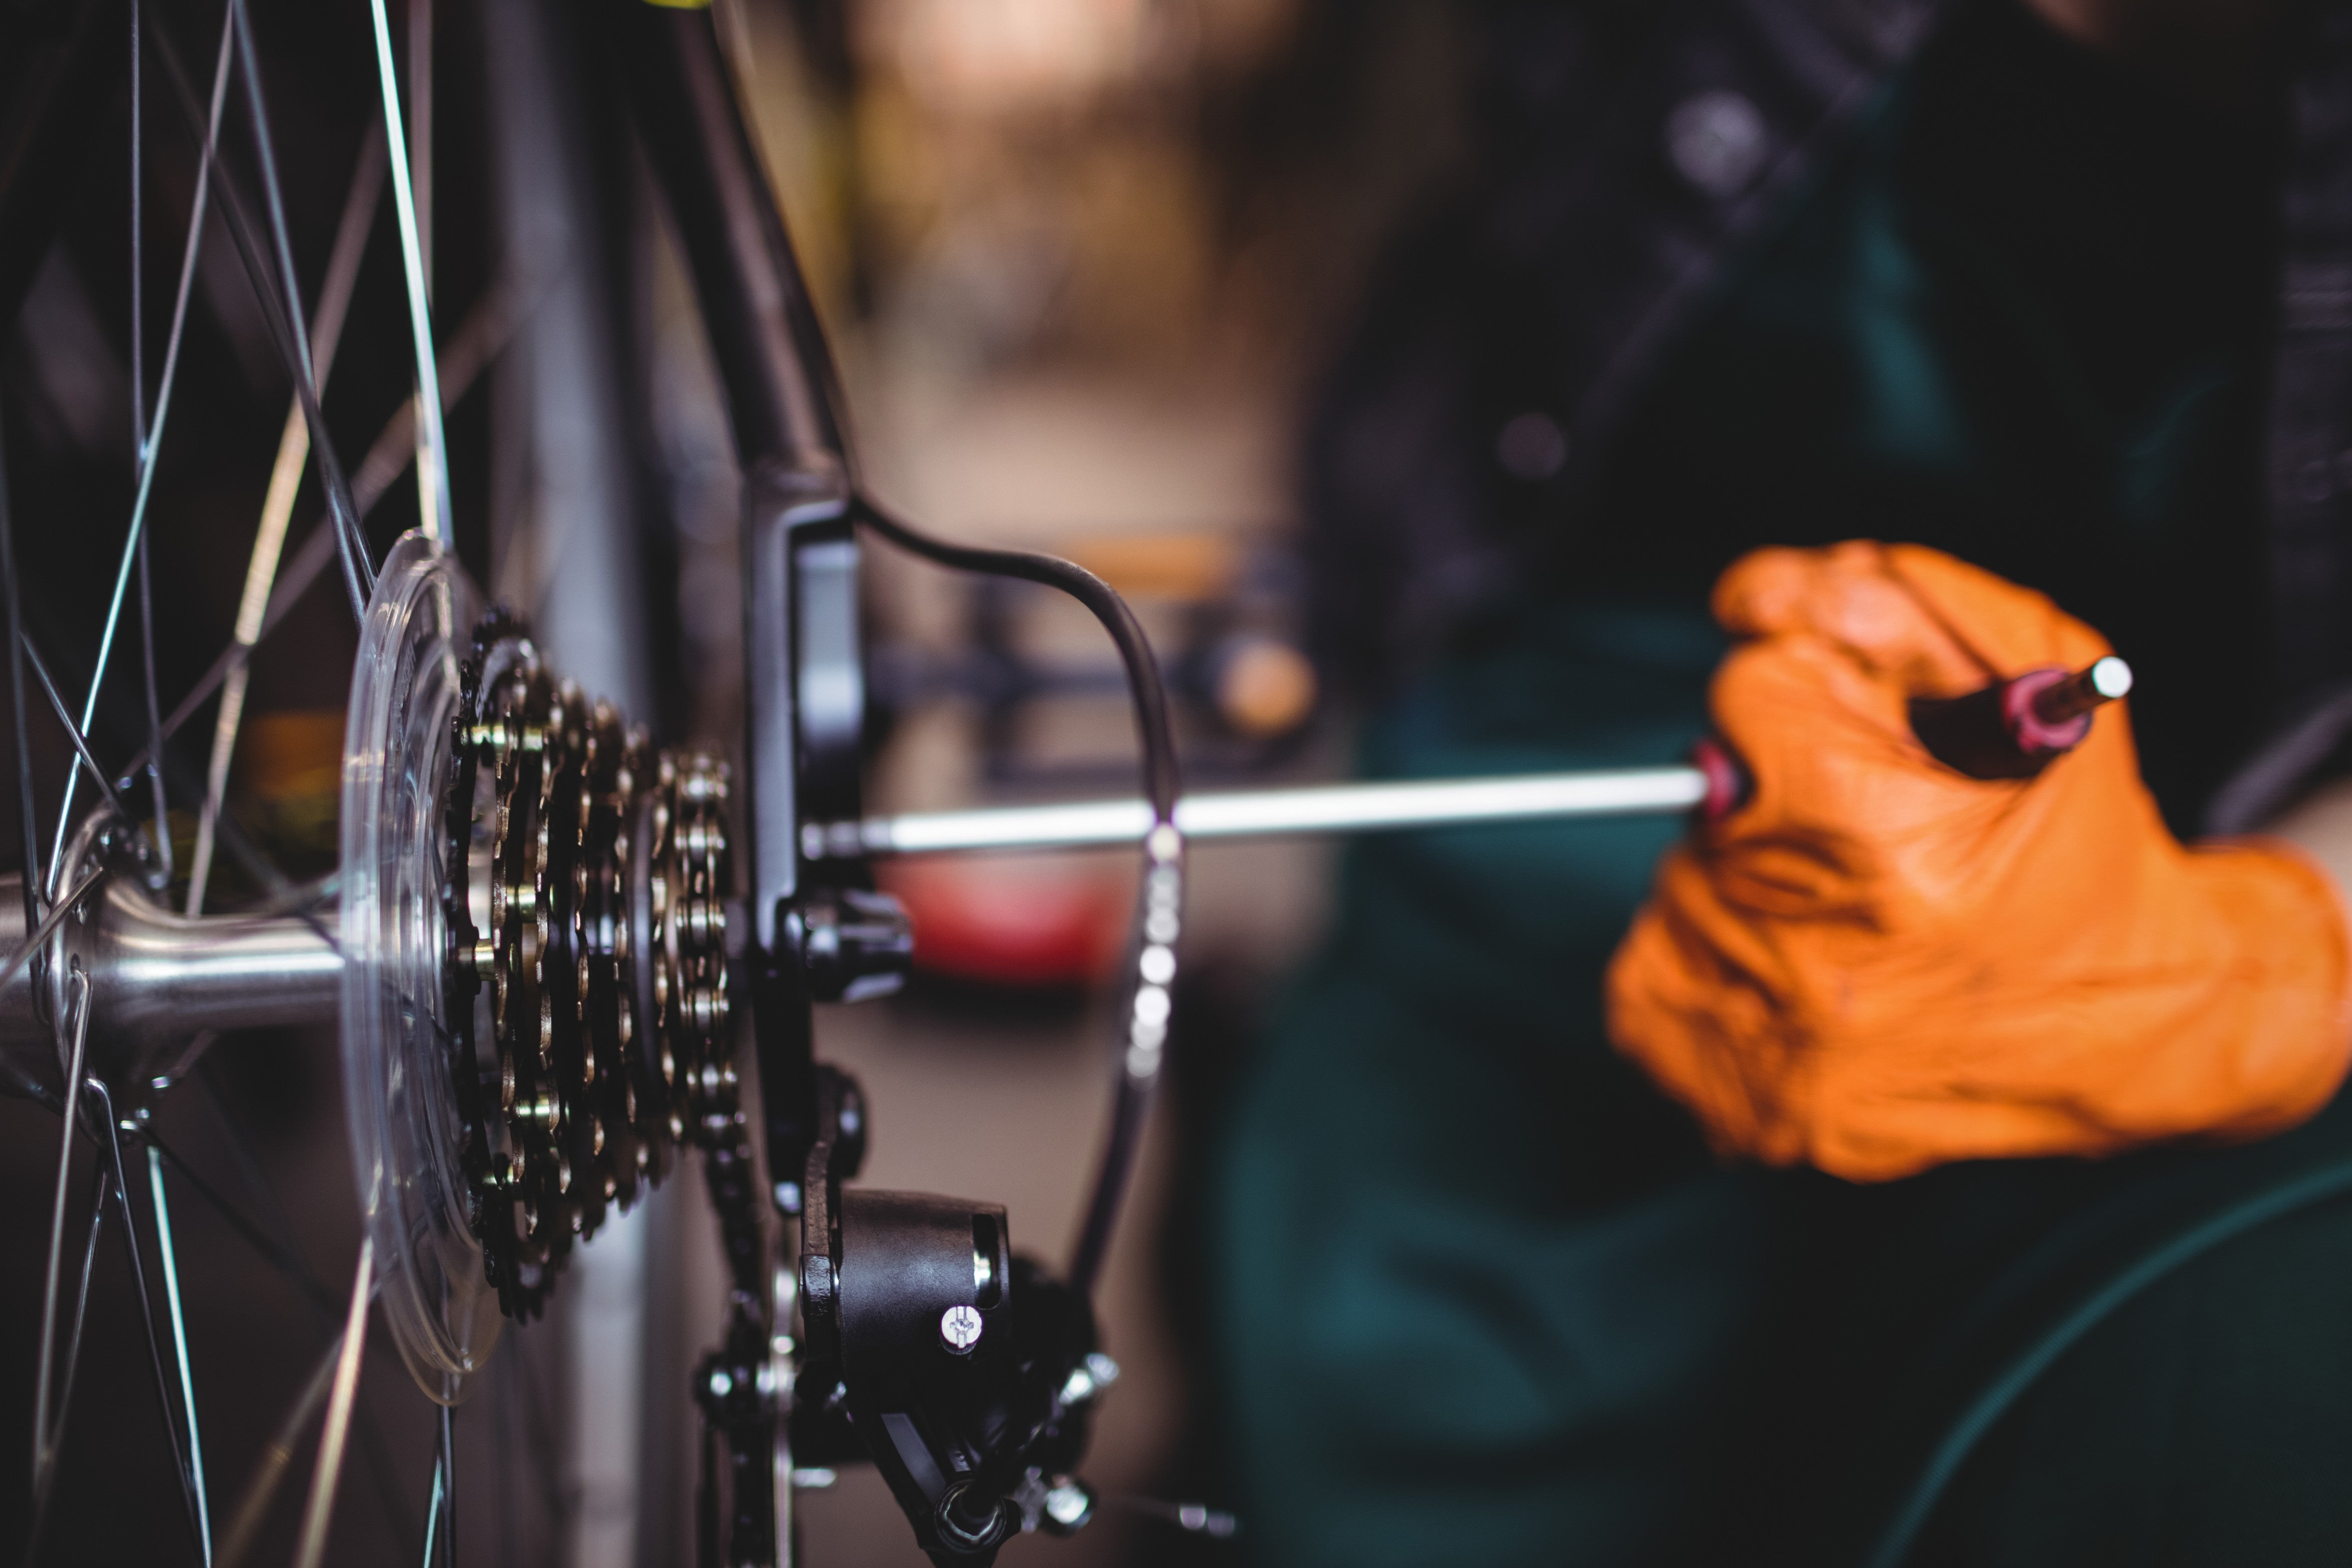 Régler son dérailleur arrière est important pour profiter d’un vélo sûr qui fonctionne bien